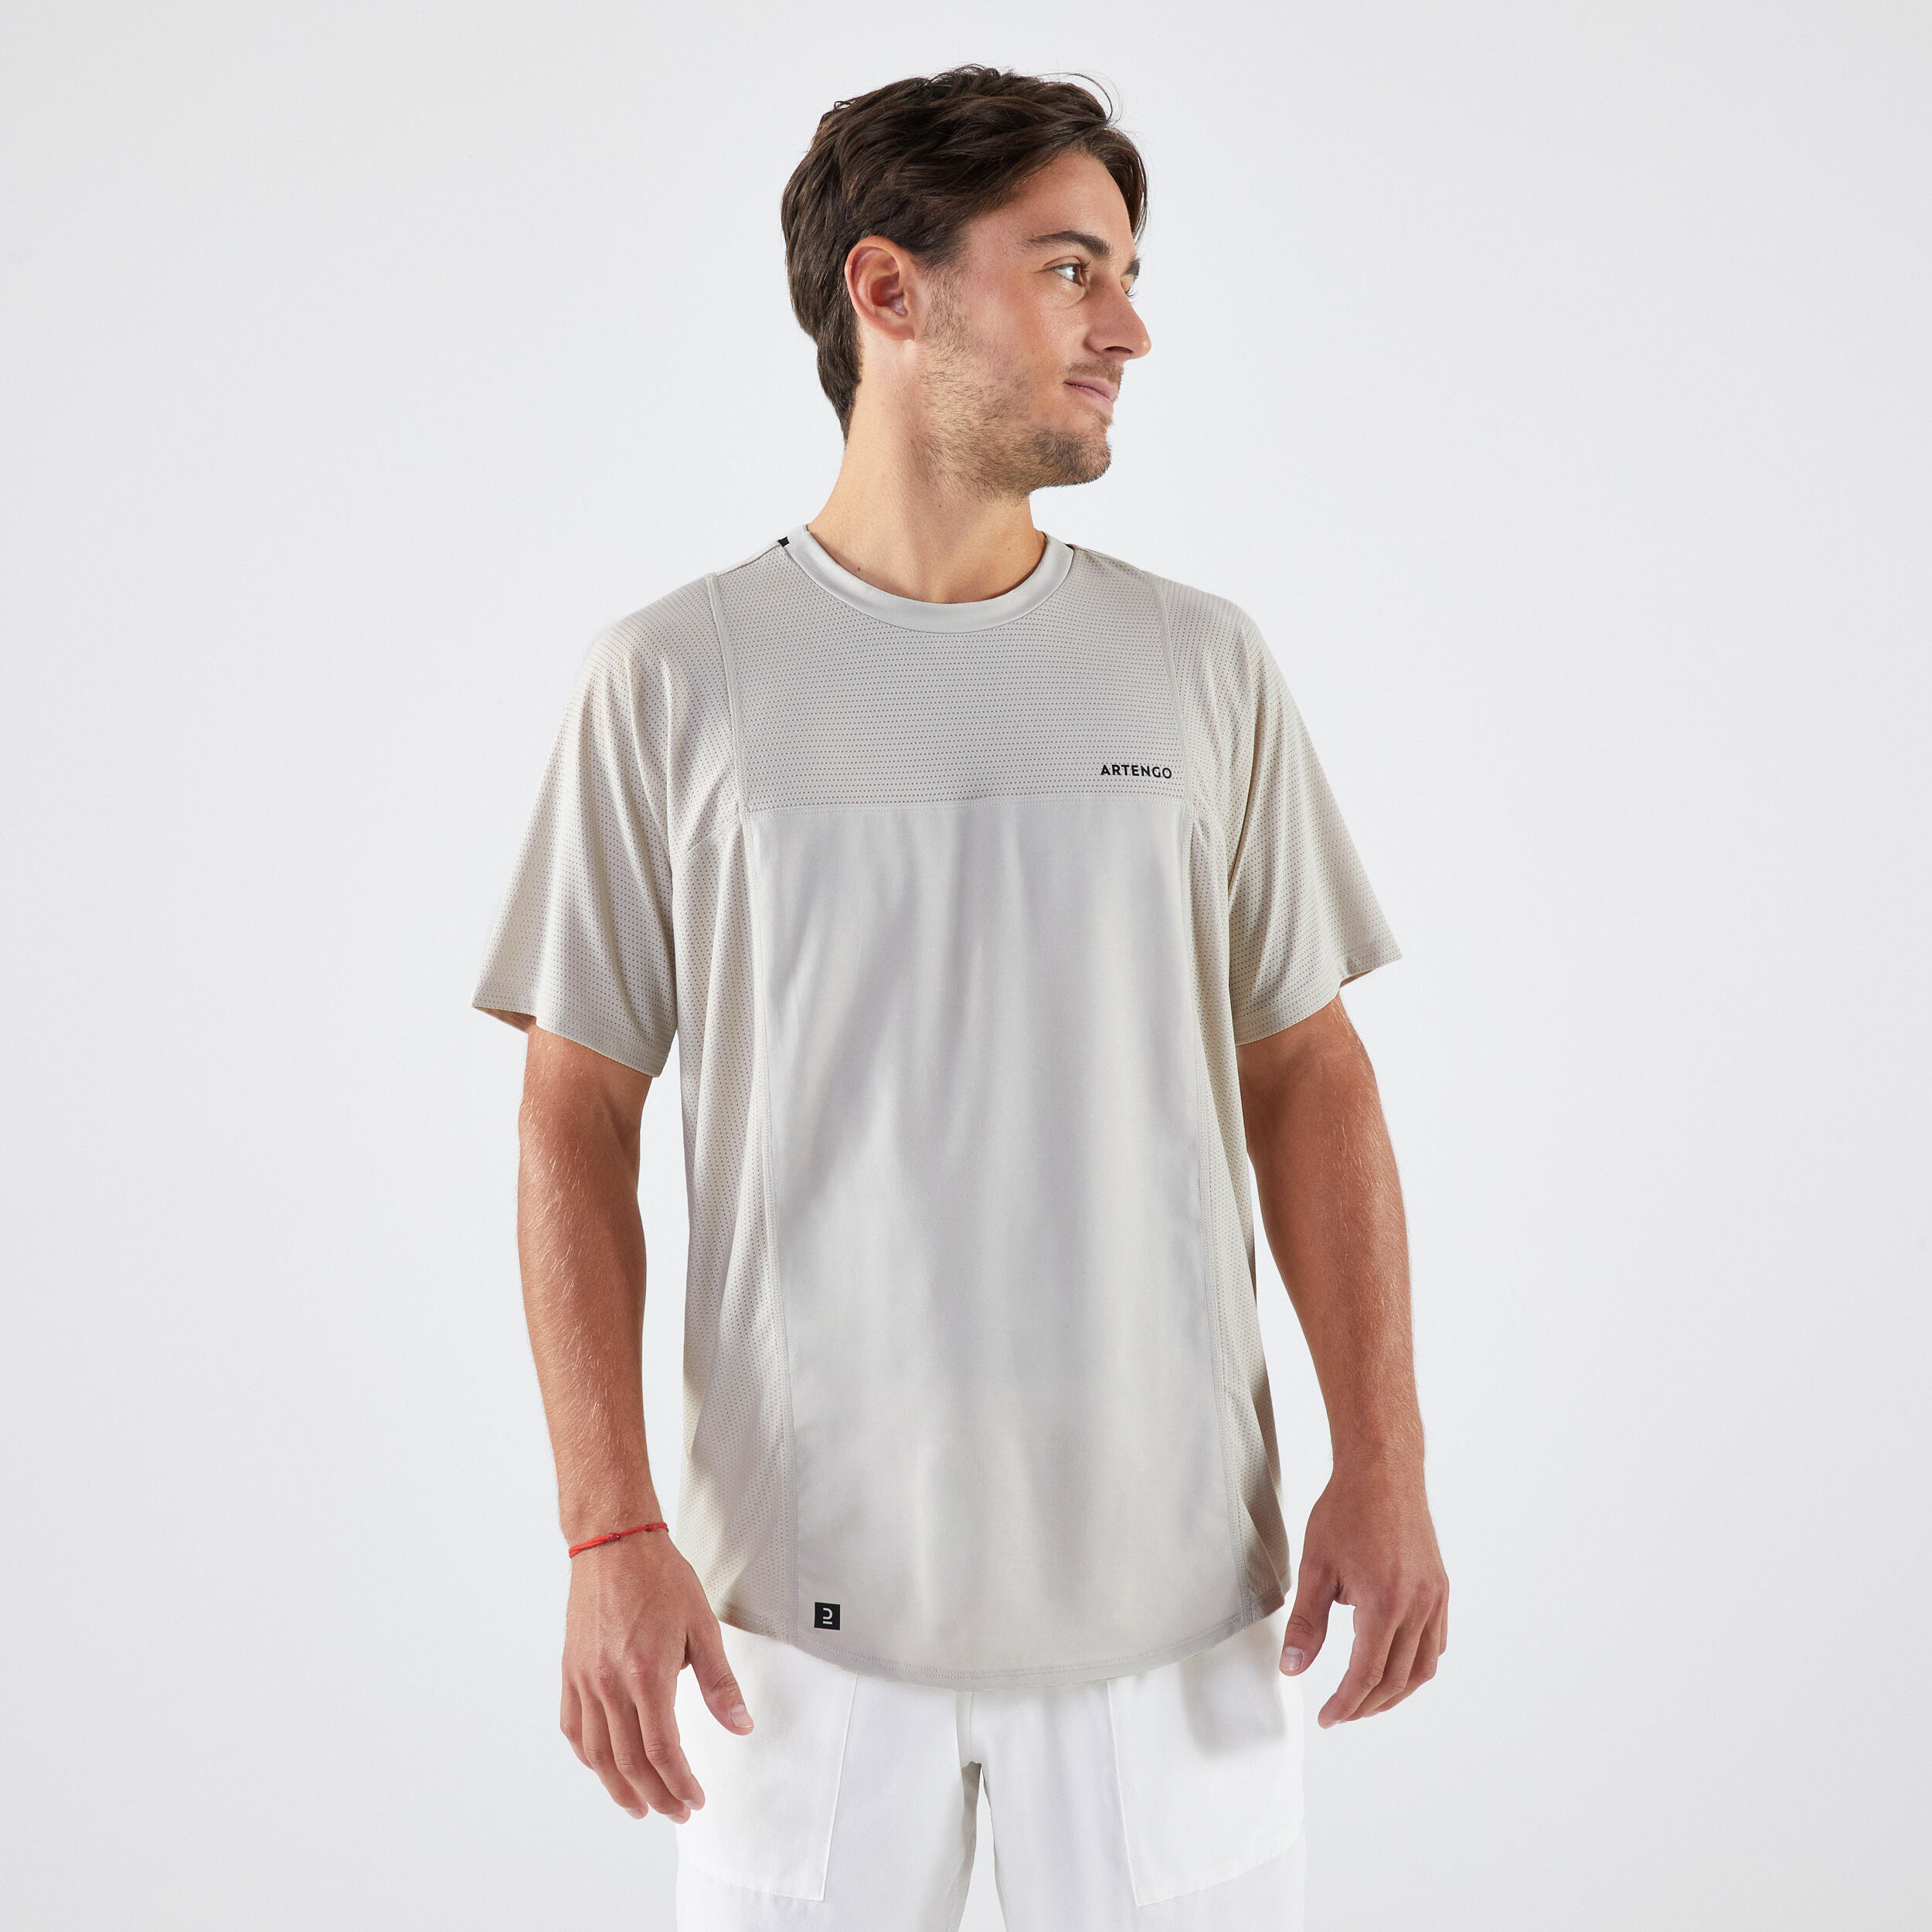 Decathlon | T-shirt tennis uomo DRY Gaël Monfils beige |  Artengo